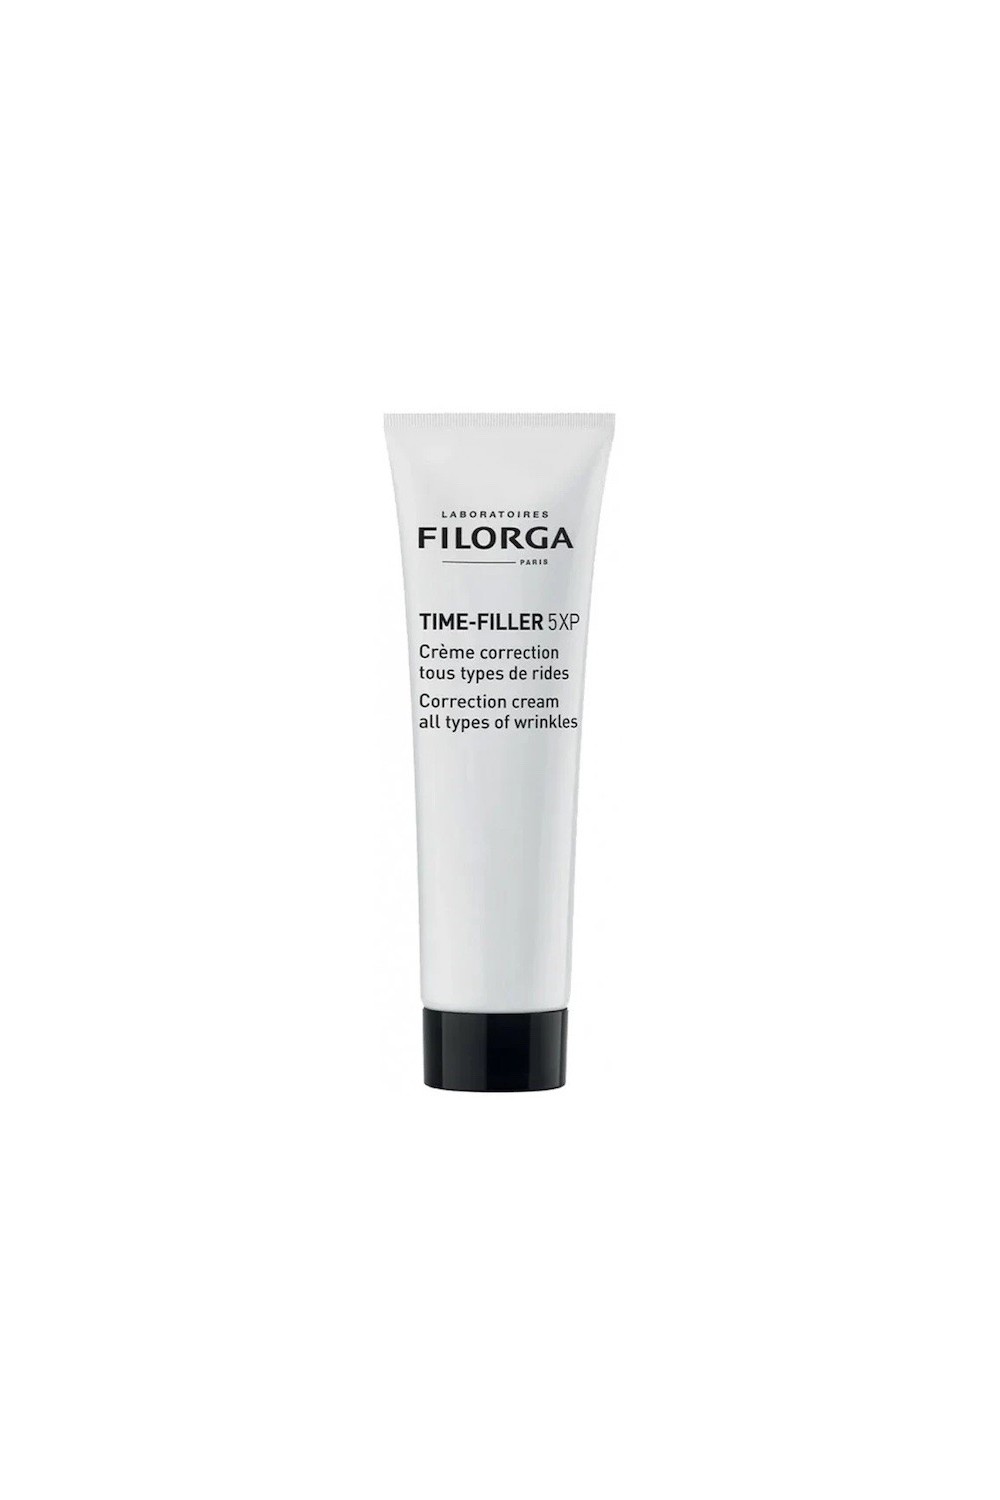 Filorga Time-Filler 5XP Correction Cream 30ml